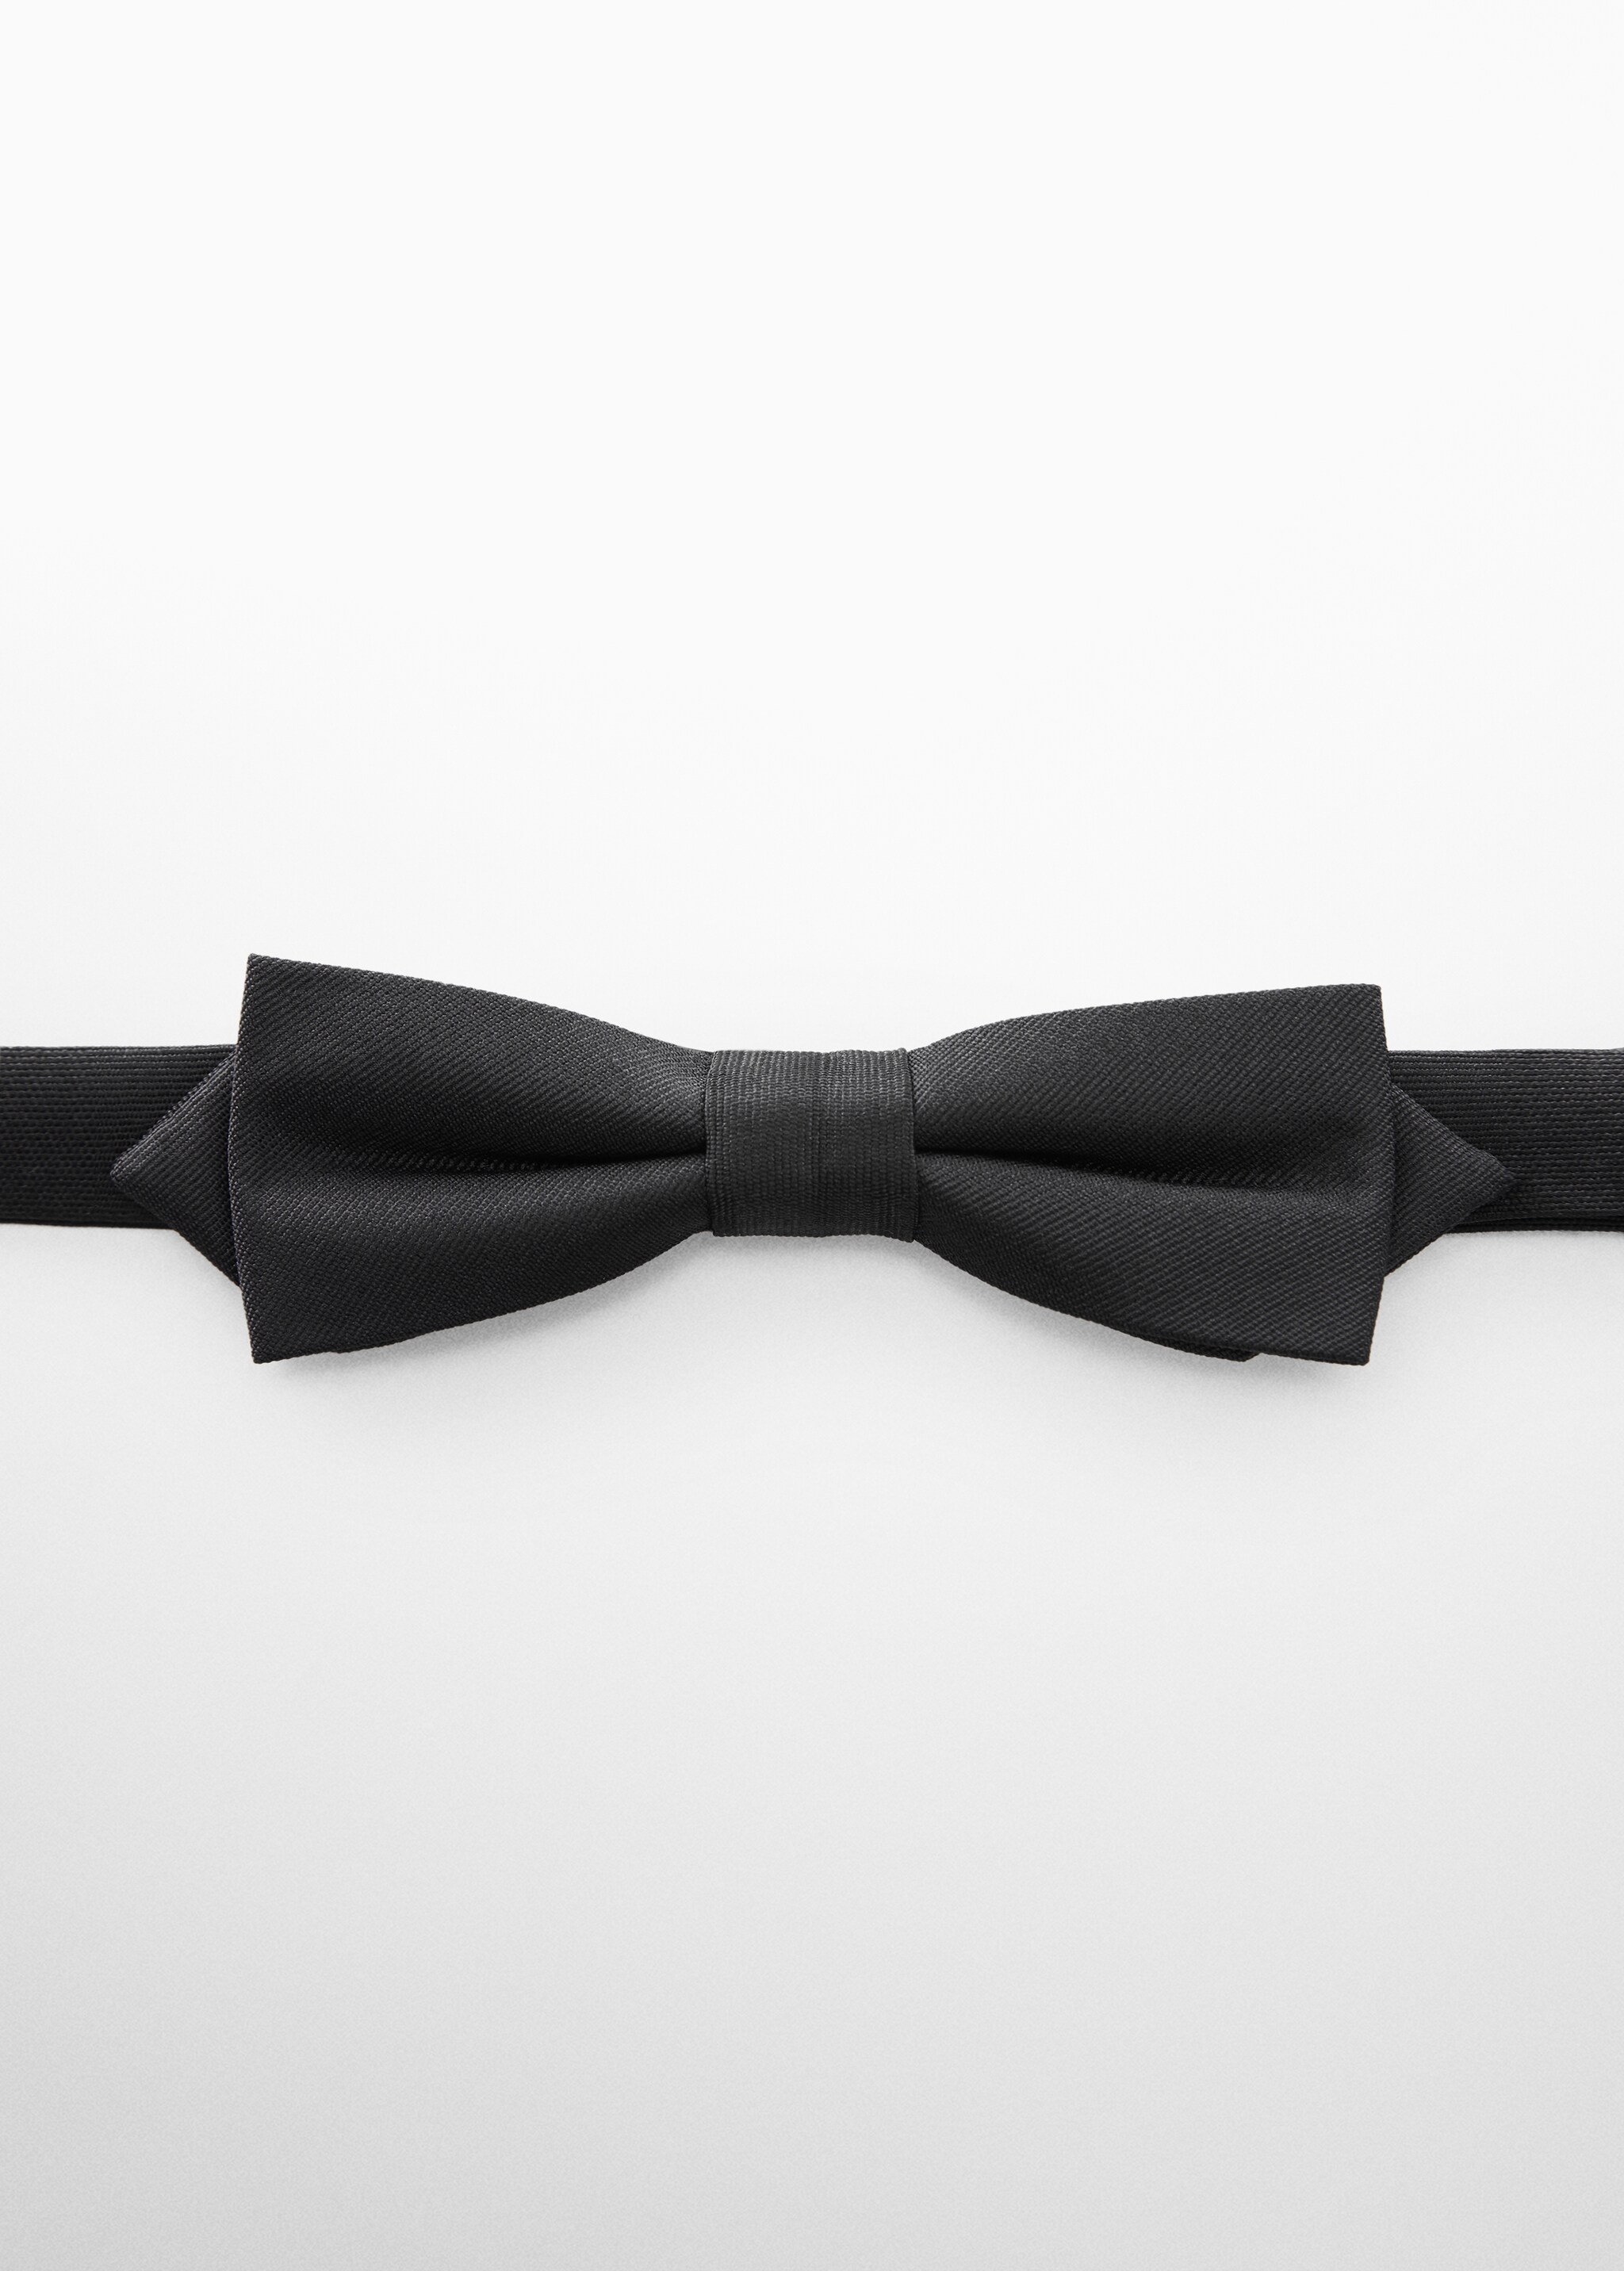 ربطة عنق كلاسيكية ذات تركيبة صغيرة - منتج دون نموذج